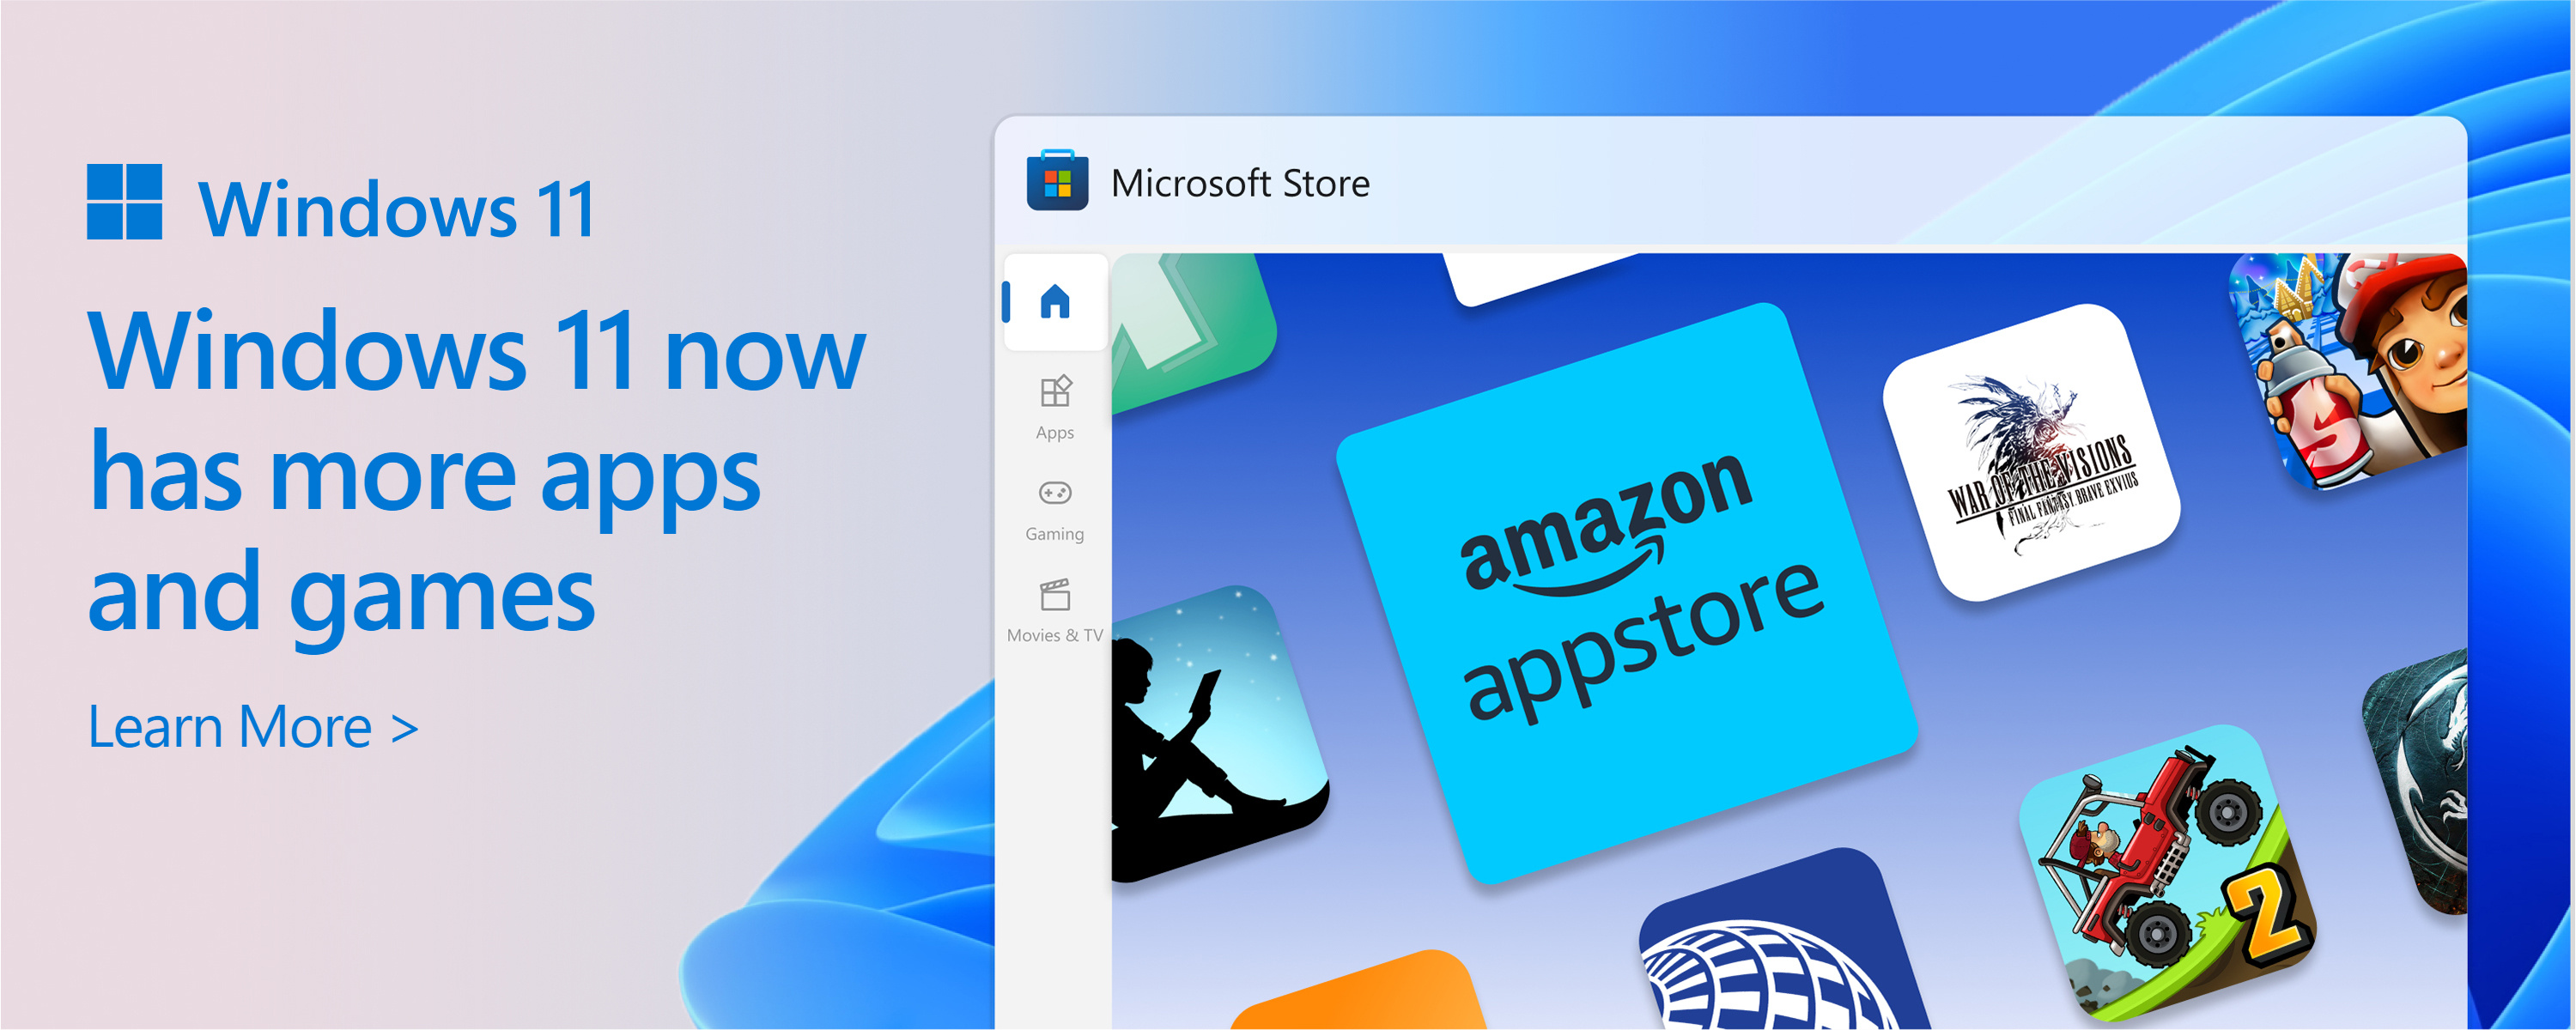 Microsoft Store 的屏幕截图，其中包含文本：Microsoft Store 的目录正在增长。 Windows 11为你提供更多所需的应用和游戏。